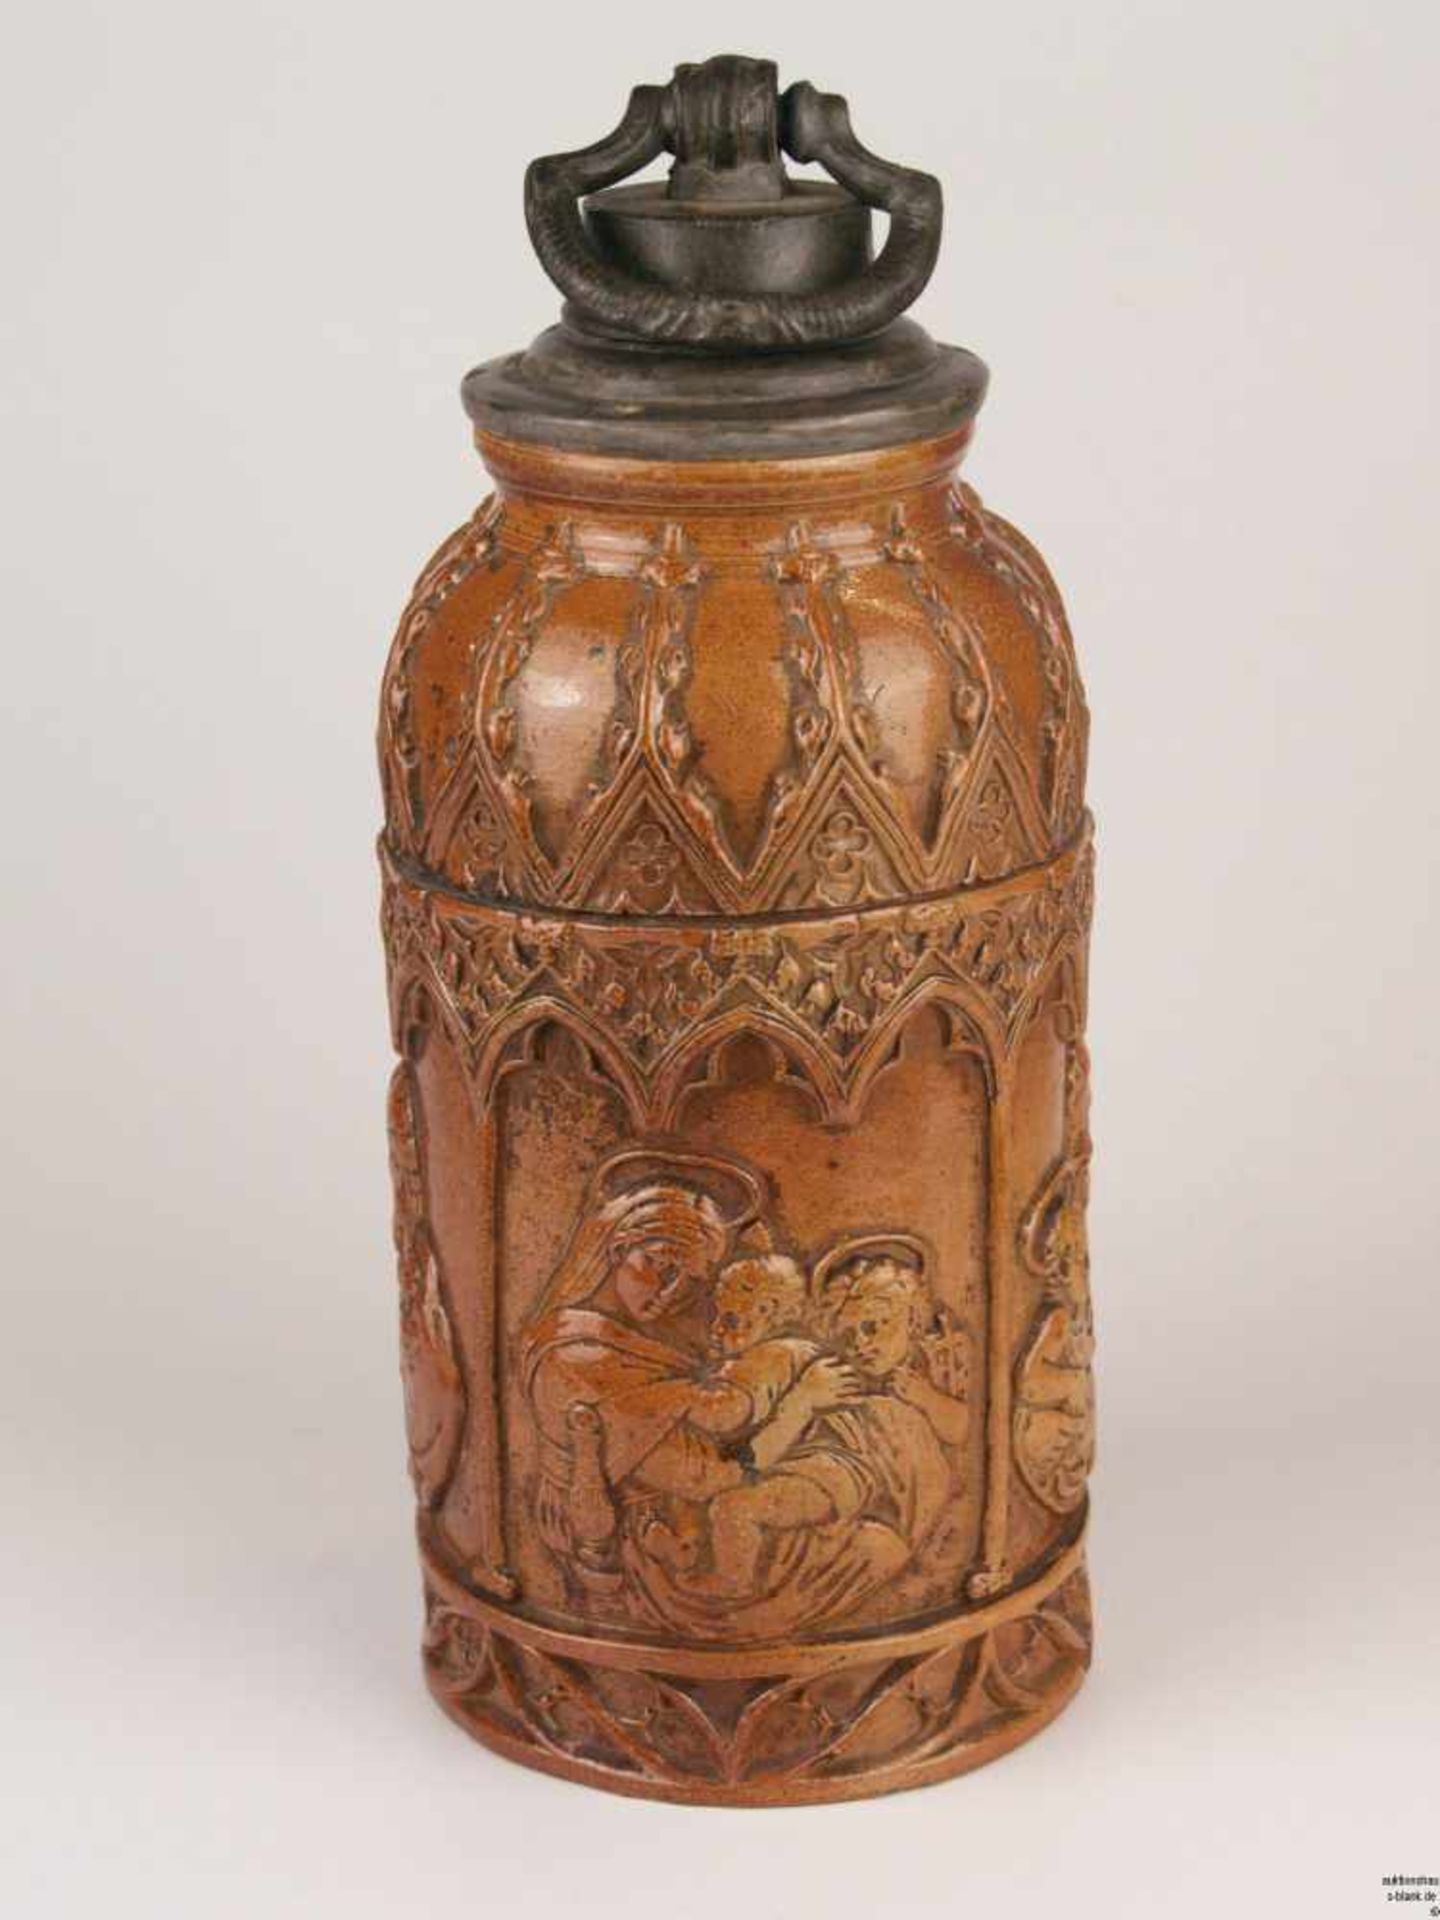 Schraubflasche - 19. Jh., Steingut, braun glasiert, Reliefdekor mit Heiliger Familie in stilisierter